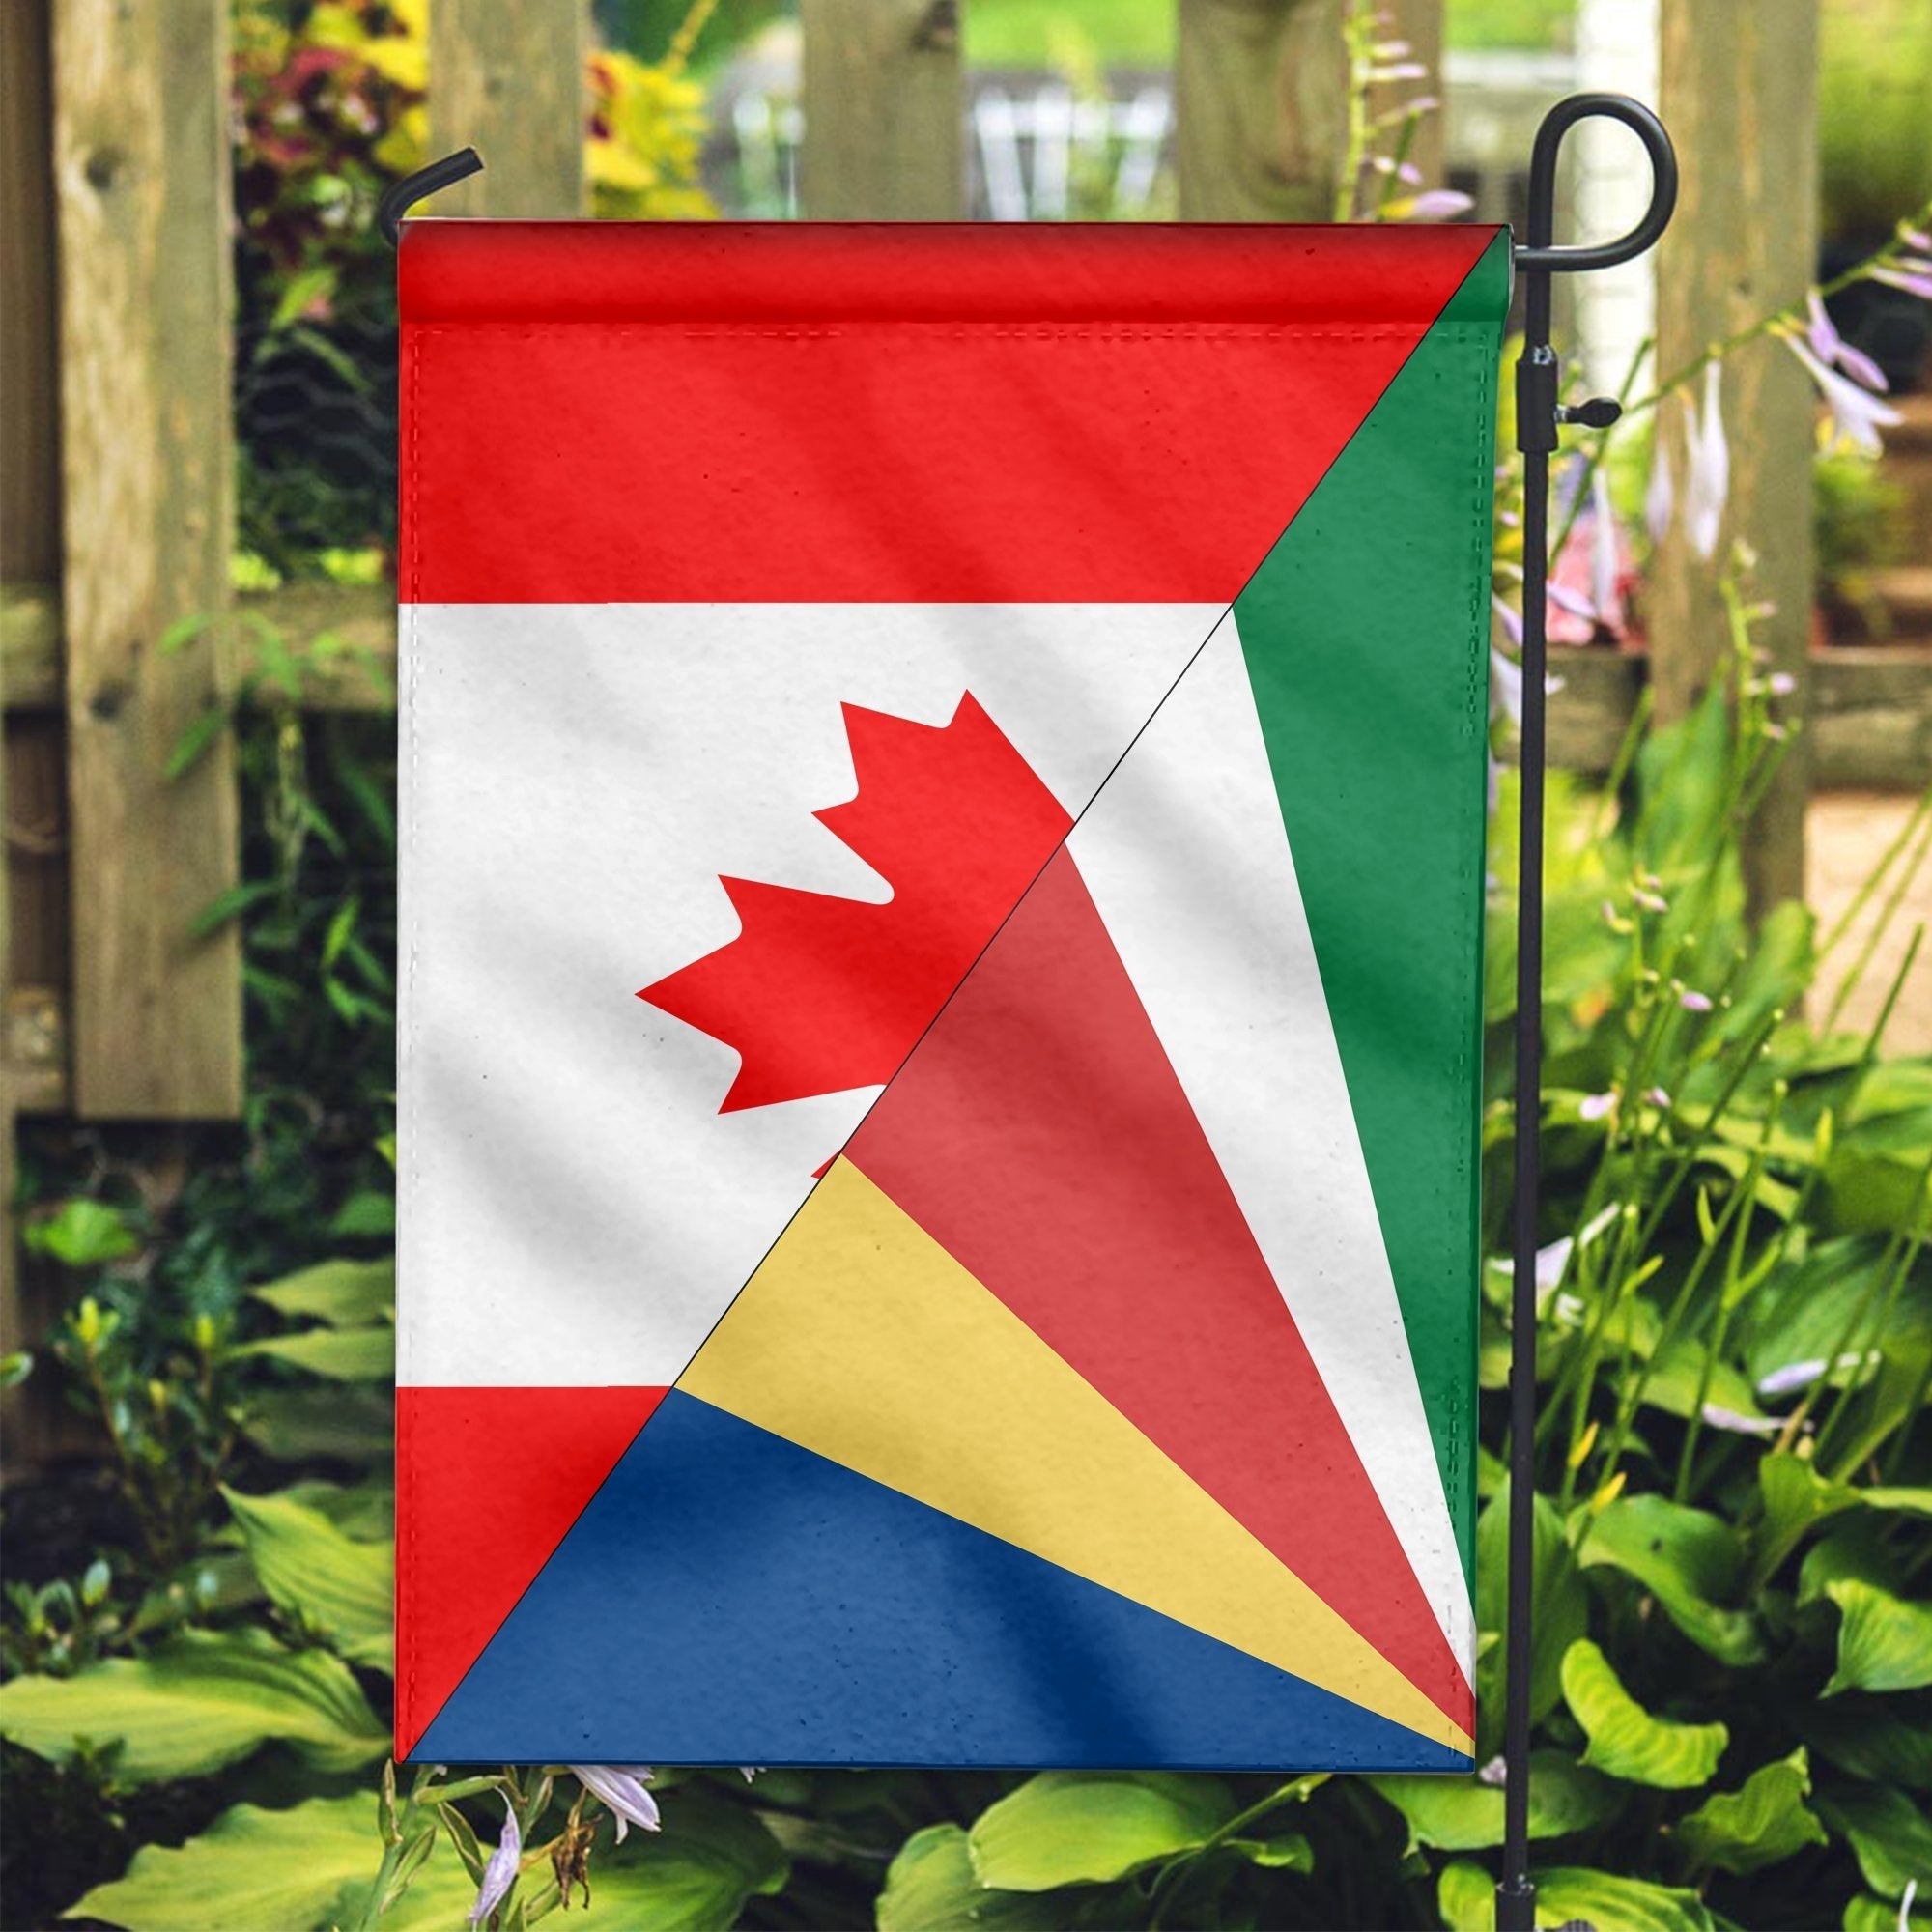 canada-flag-with-seychelles-flag